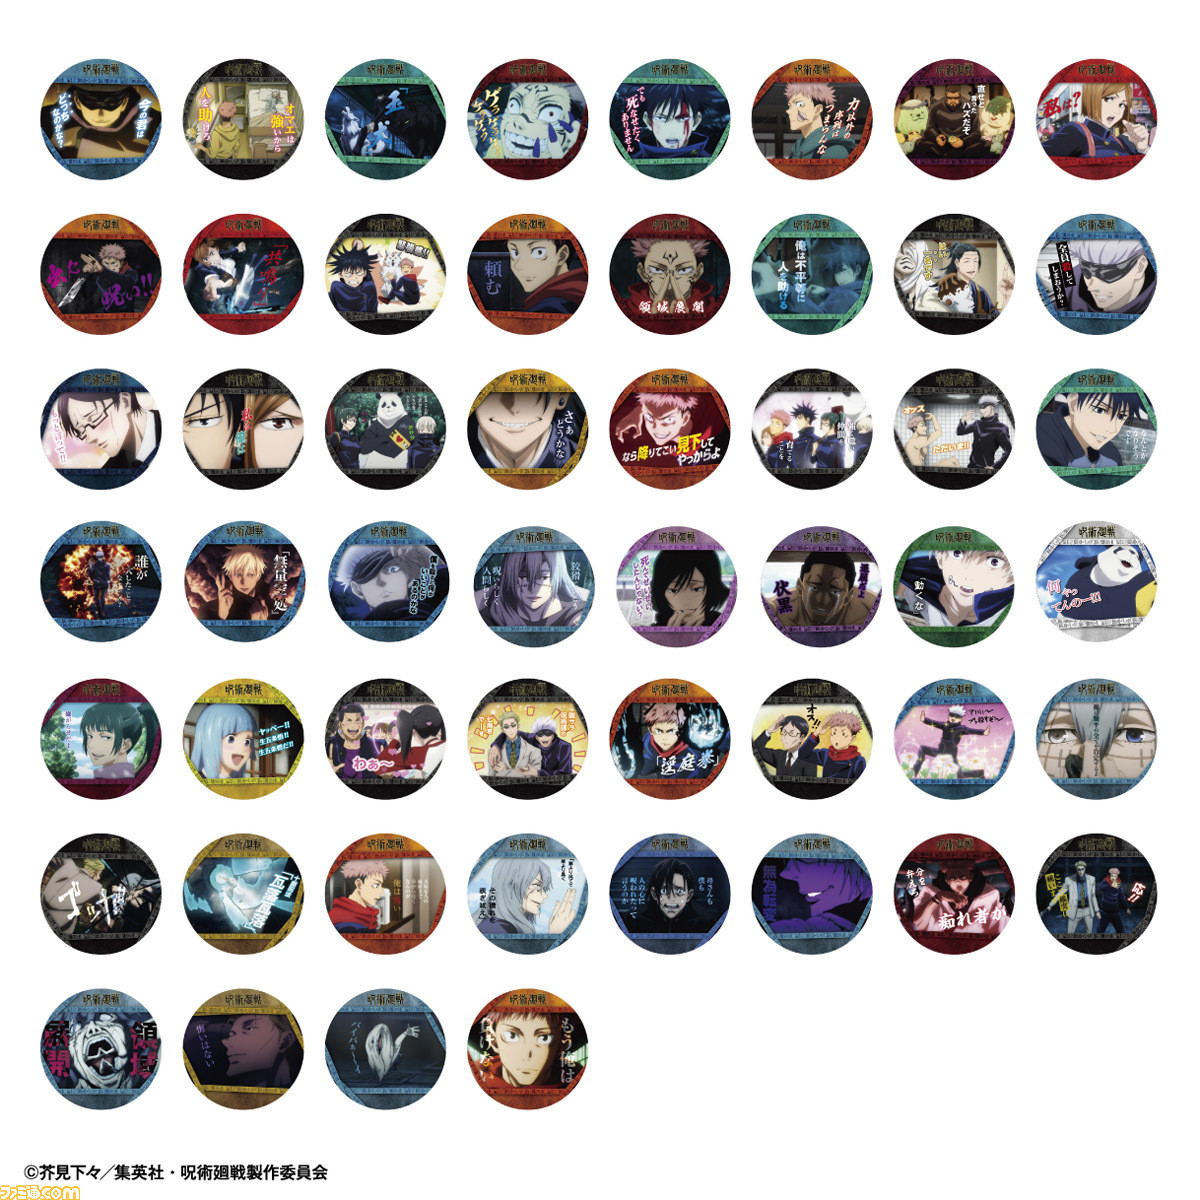 『呪術廻戦』全104種類の場面写を収録したコースターコレクション第1弾が5月28日発売。 | ゲーム・エンタメ最新情報のファミ通.com